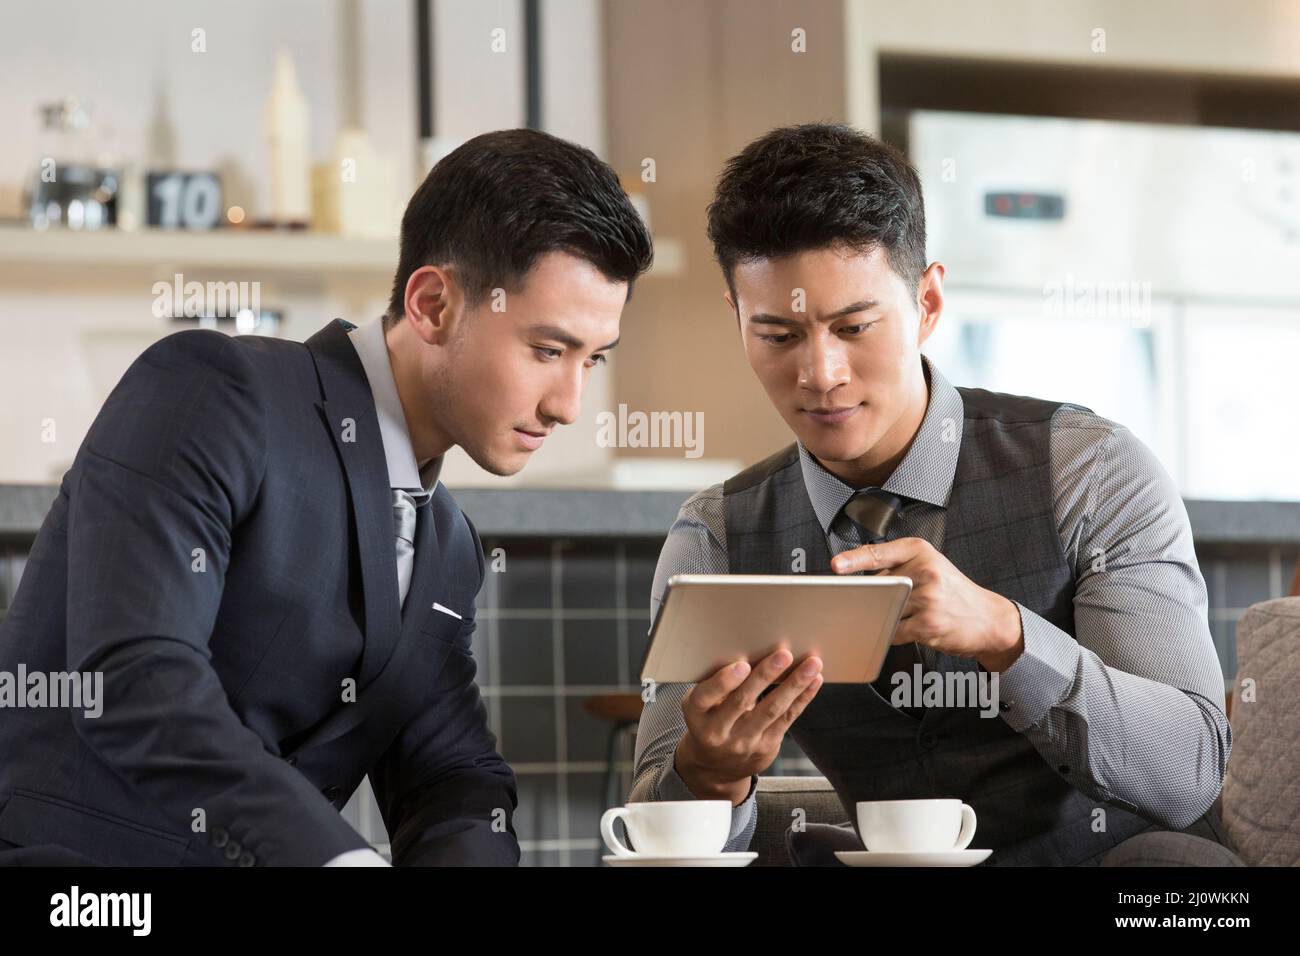 Les hommes d'affaires chinois travaillent et boivent du café Banque D'Images